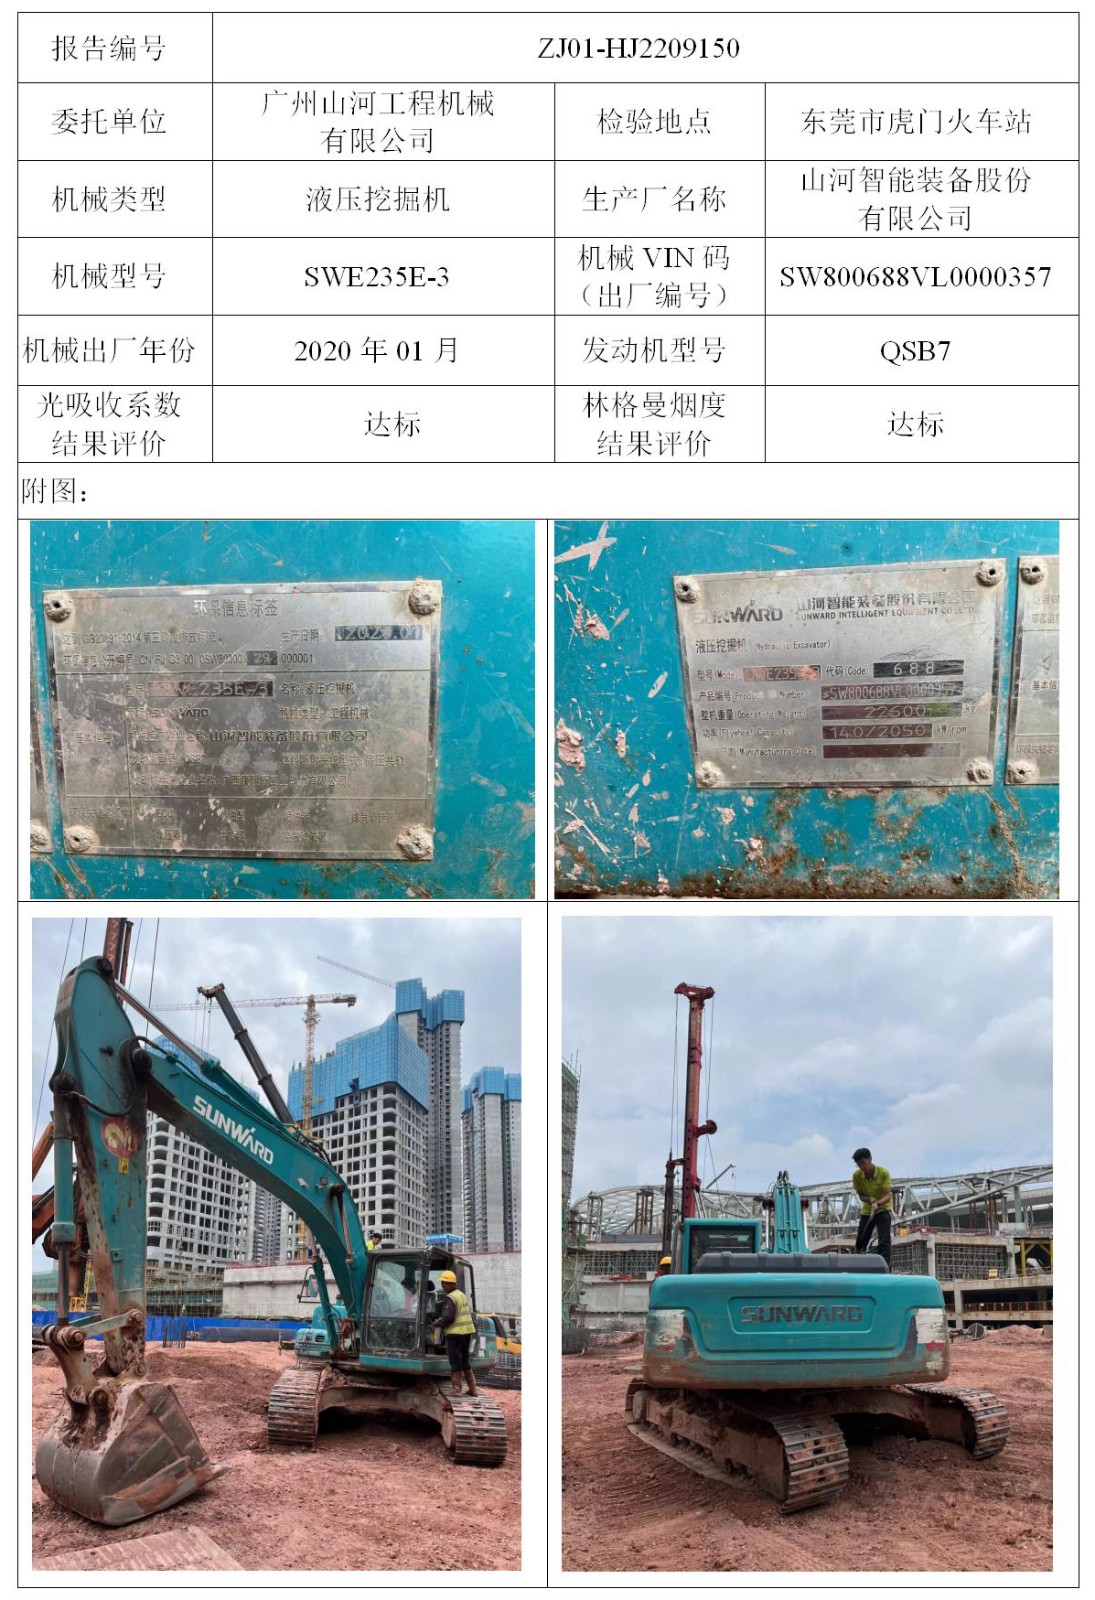 委托-ZJ01-HJ2209150广州山河工程机械有限公司（叉车废气）二维码-张伟仪_01.jpg